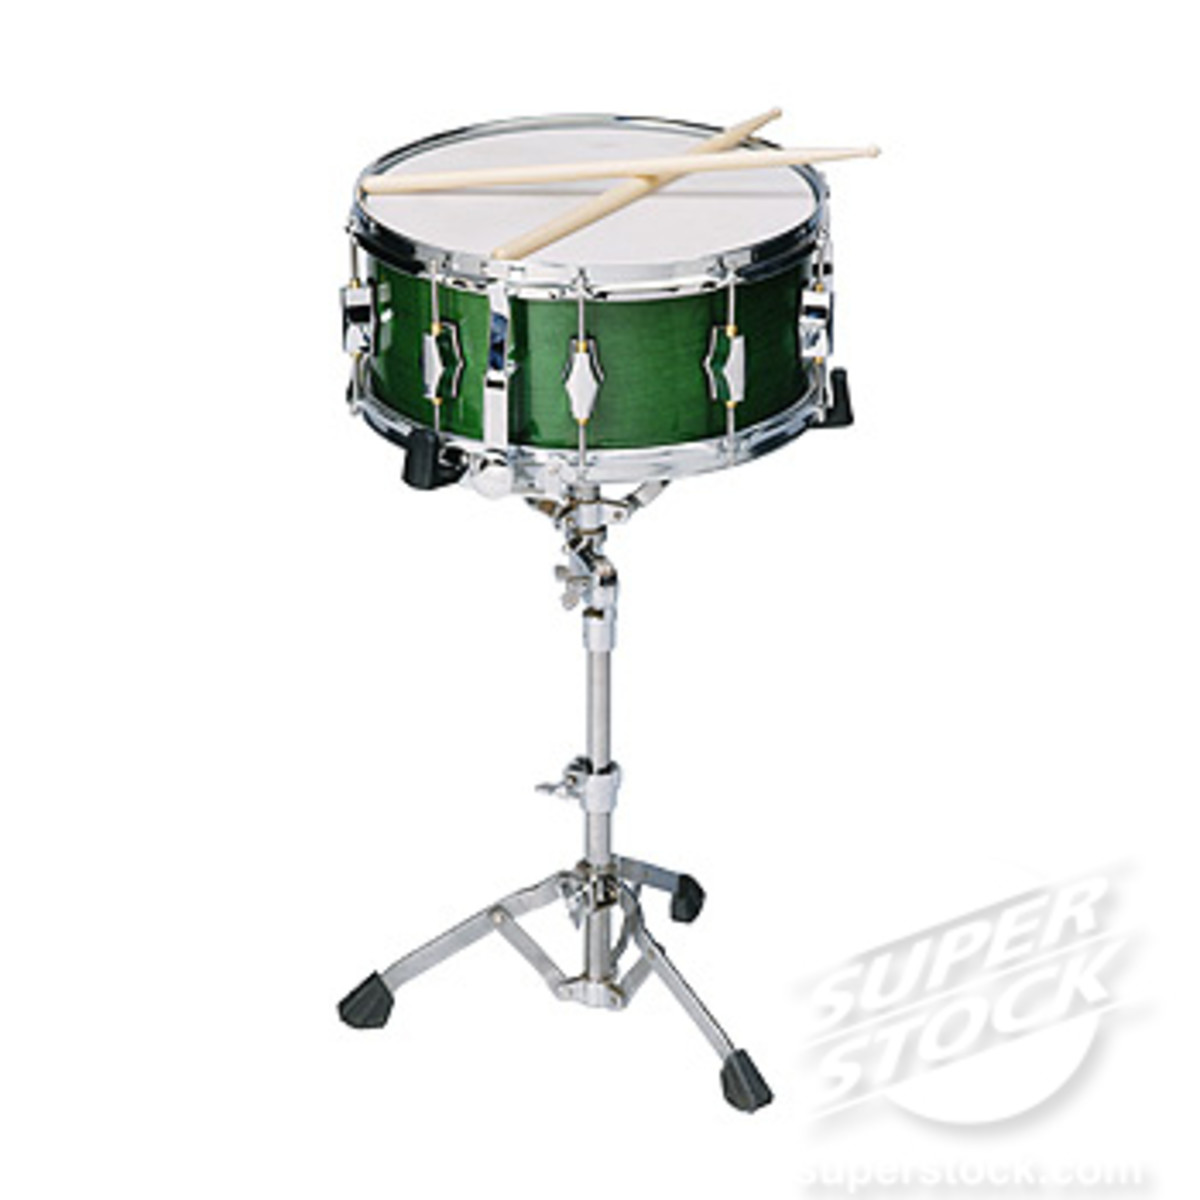 Modern snare drum